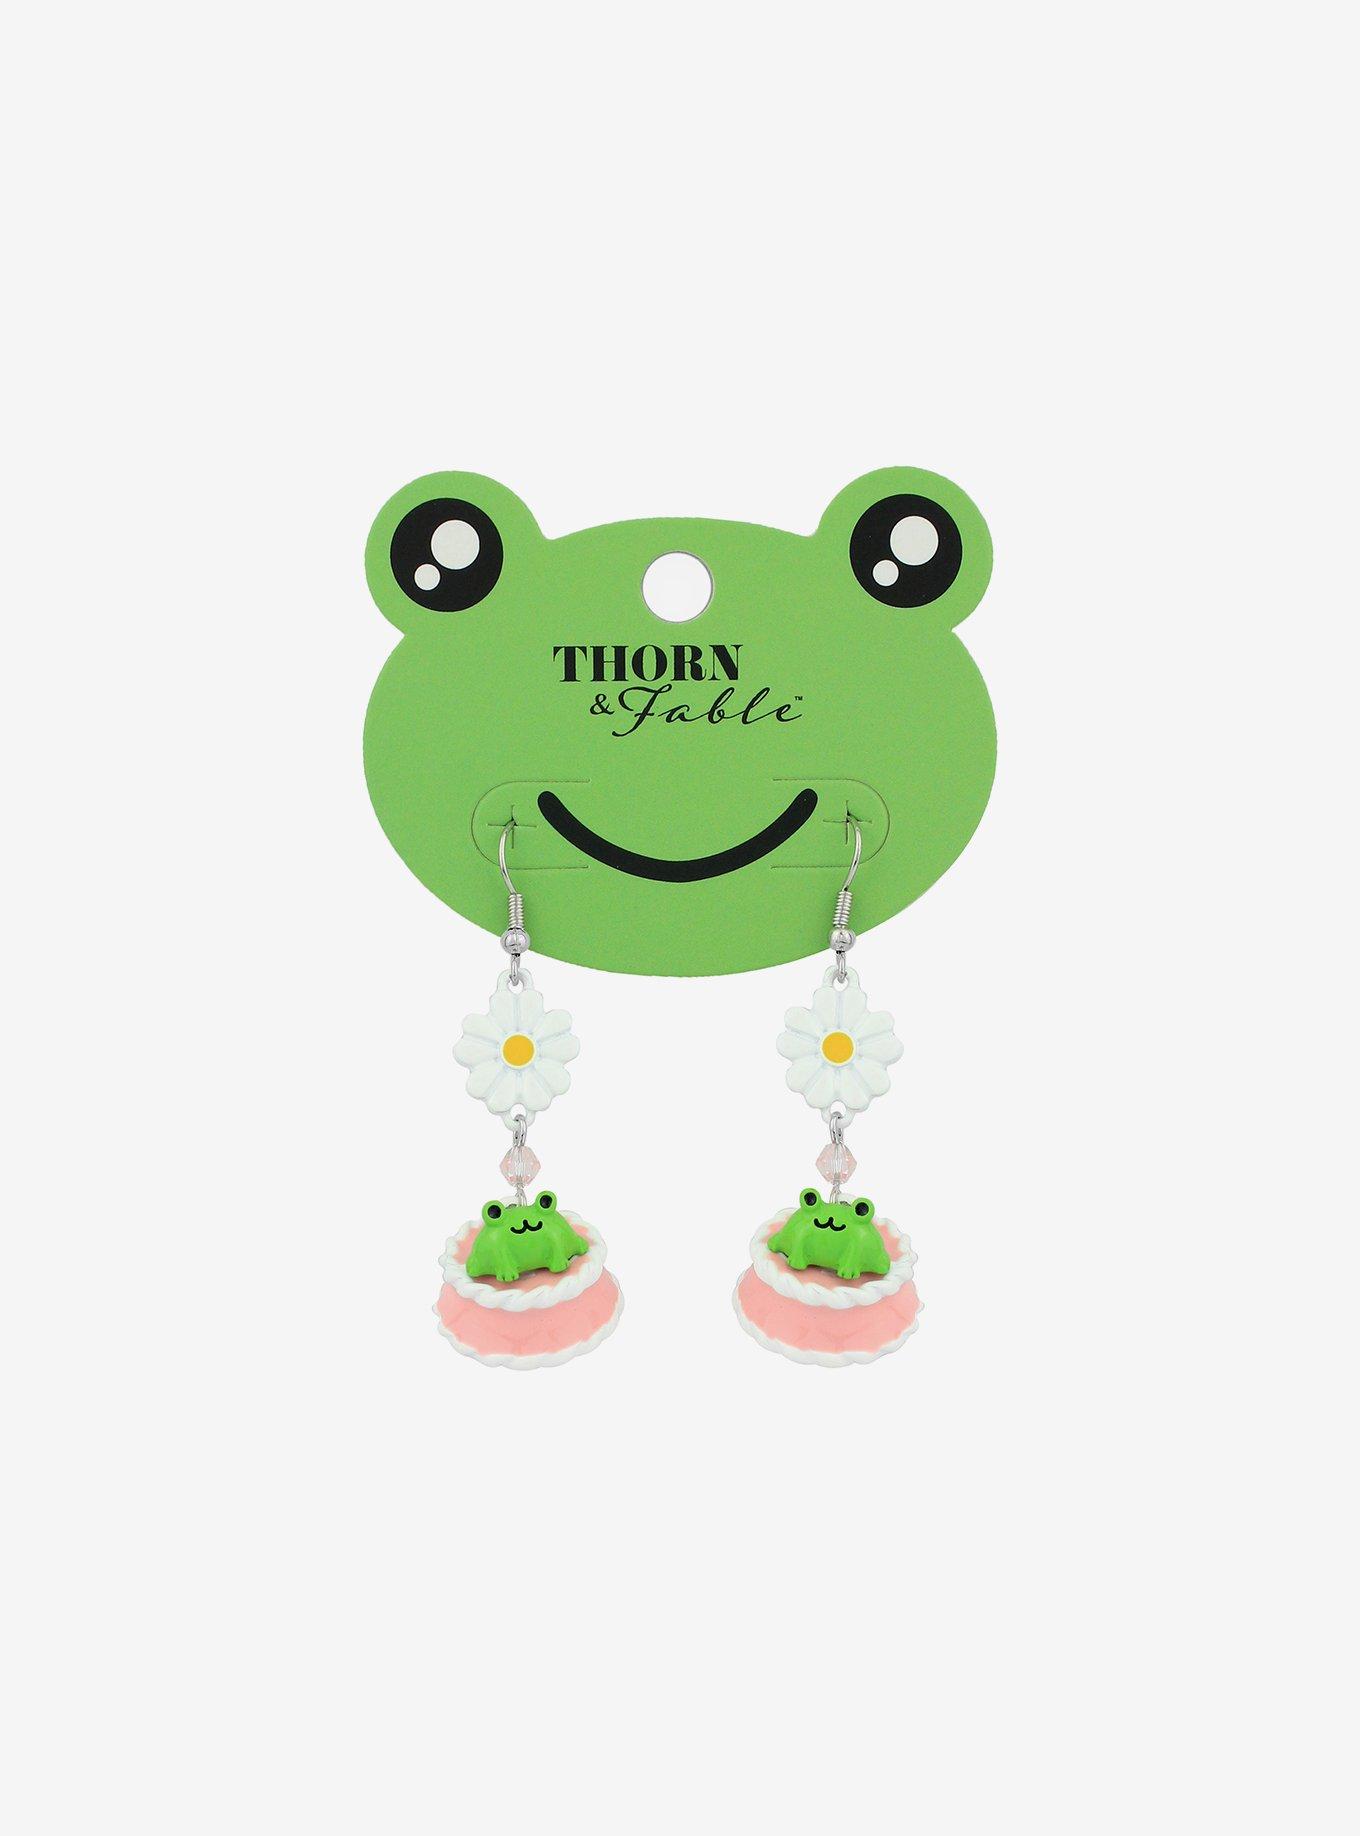 Frog Cake Earrings, , hi-res